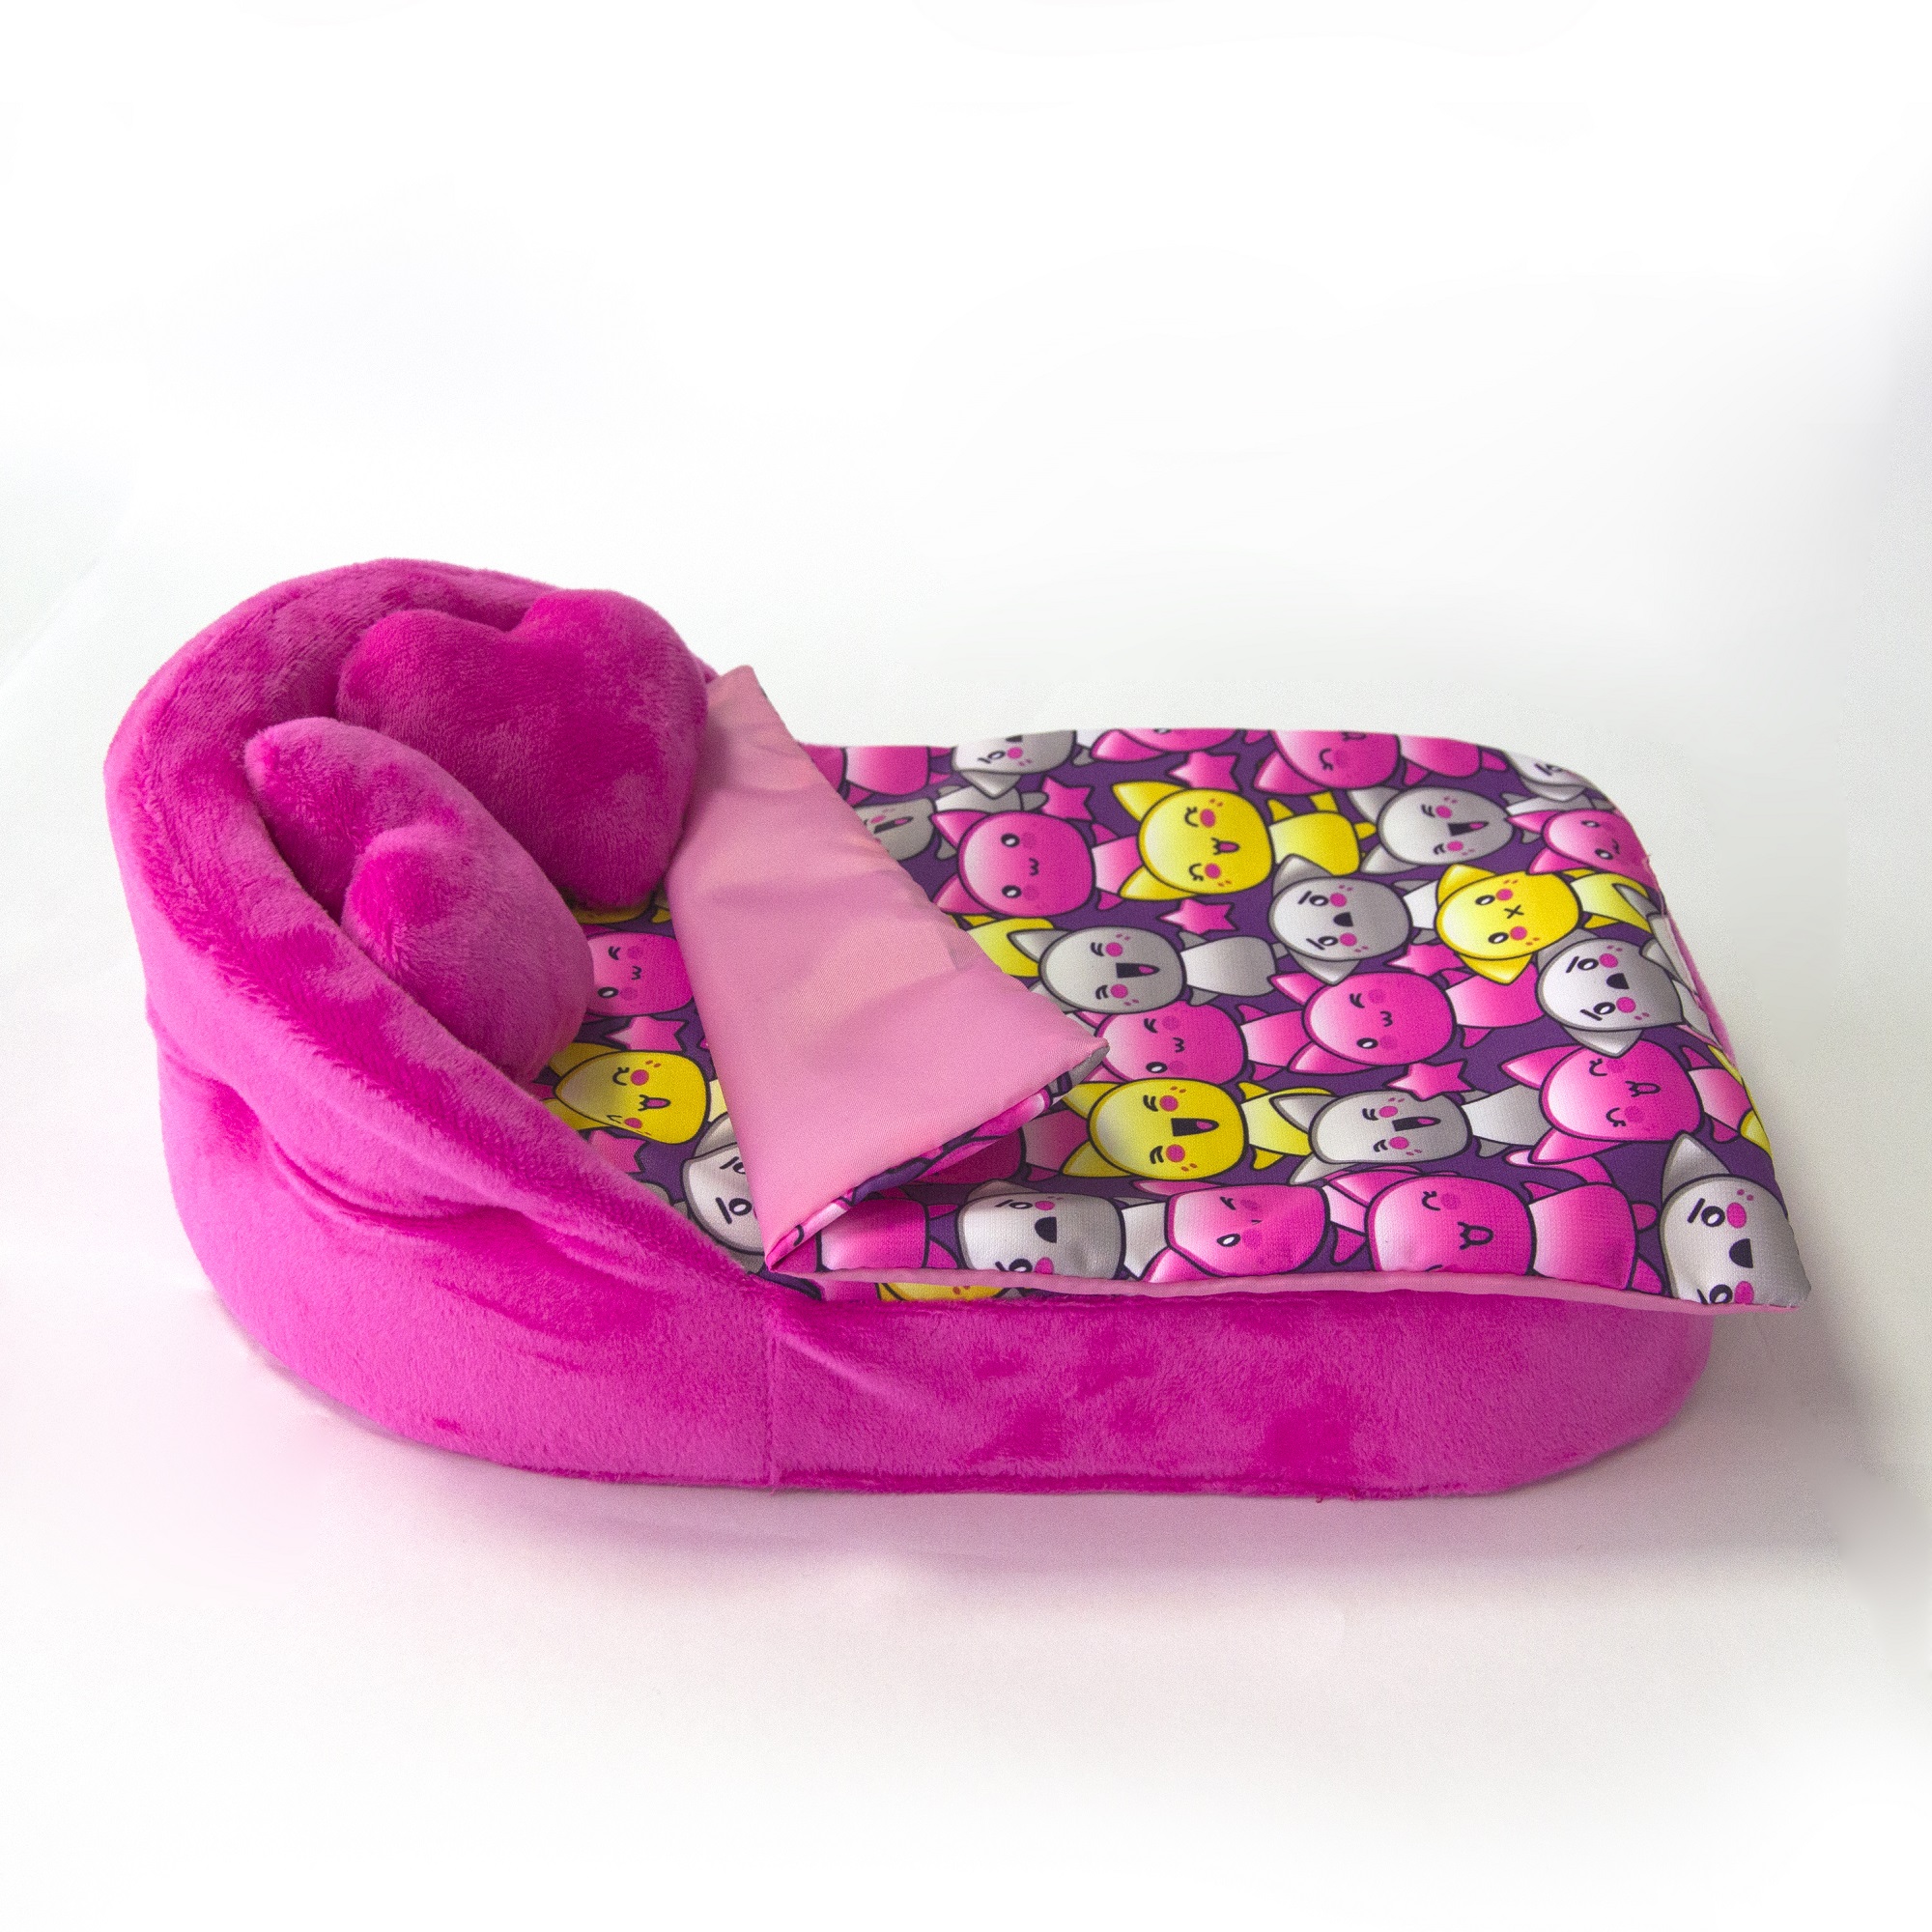 Набор мебели для кукол Belon familia Принт хор котят фиолетовый кровать с круглой спинкой 2 подушки НМ-003/4-33 - фото 5